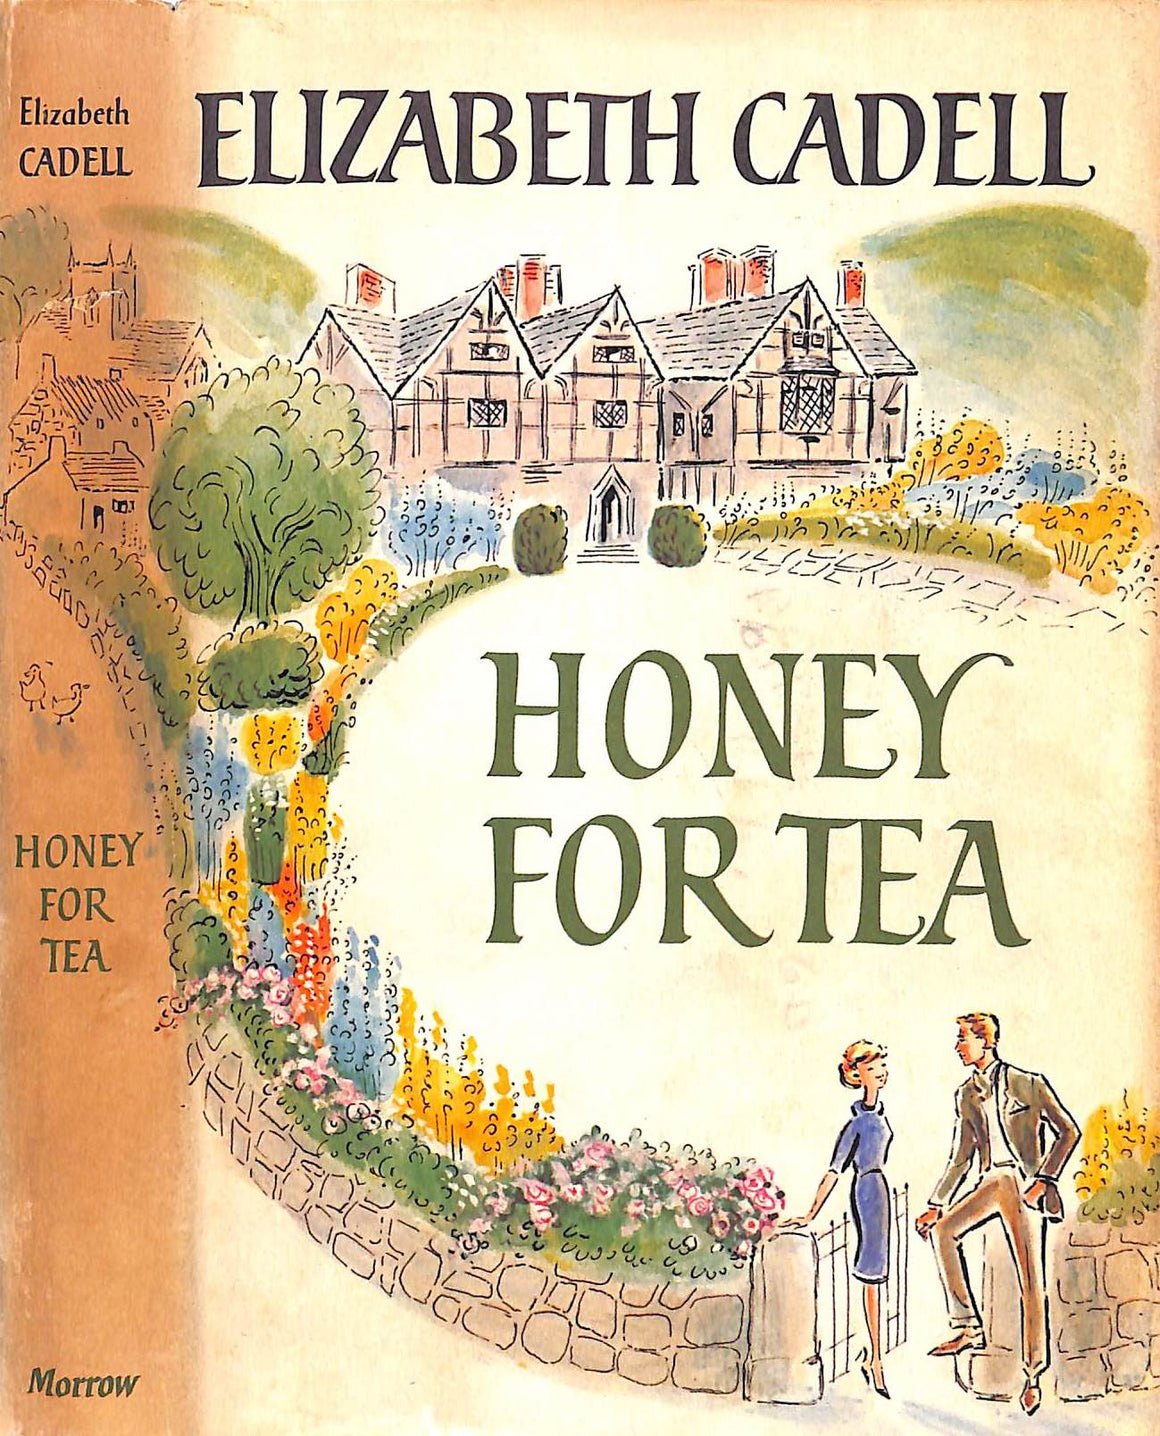 "Honey For Tea" 1962 CADELL, Elizabeth